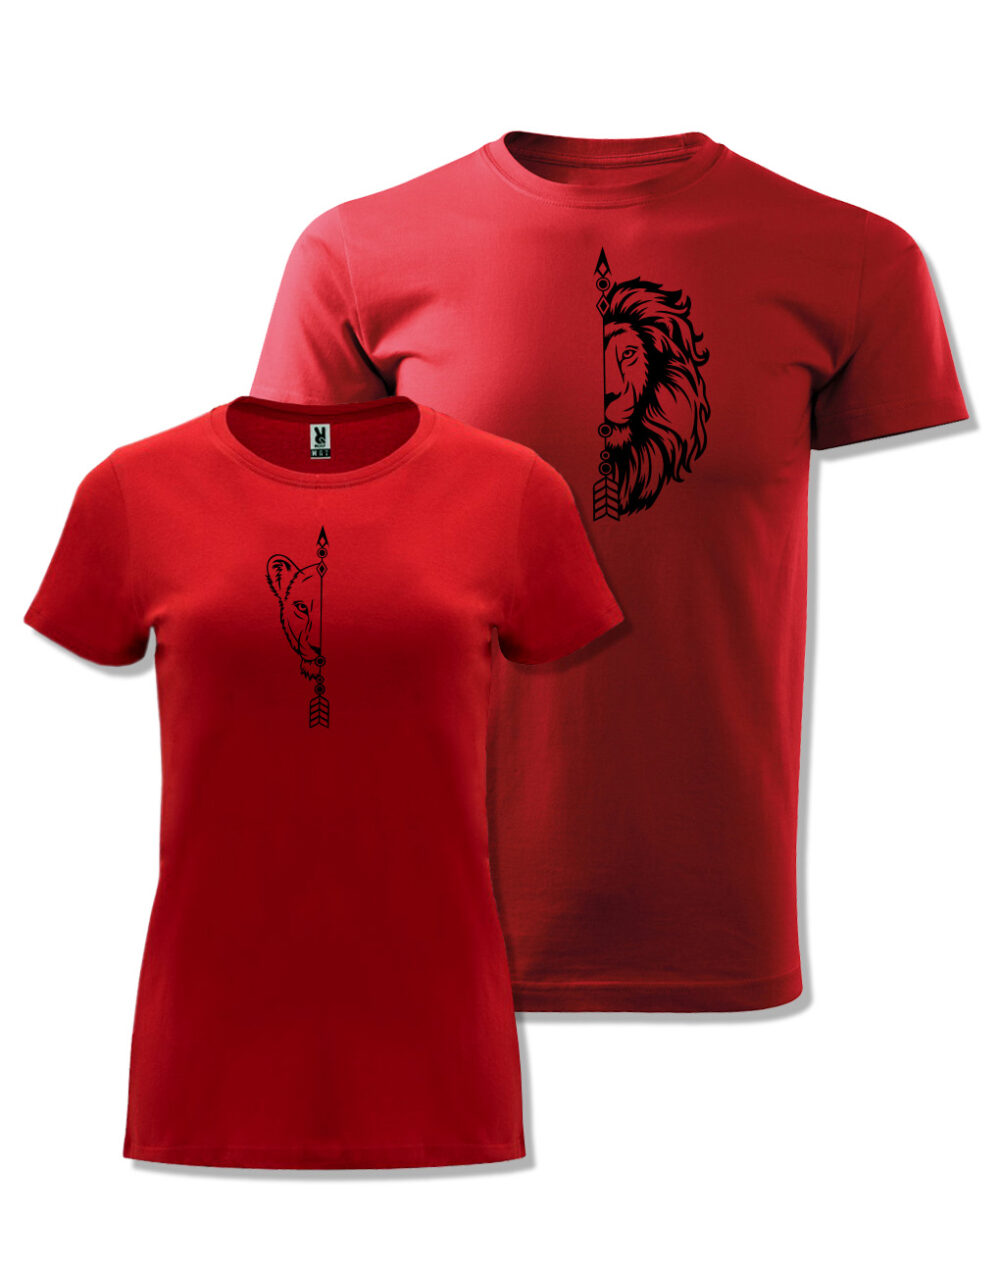 Párová trička s potiskem Lev & Lvice červená